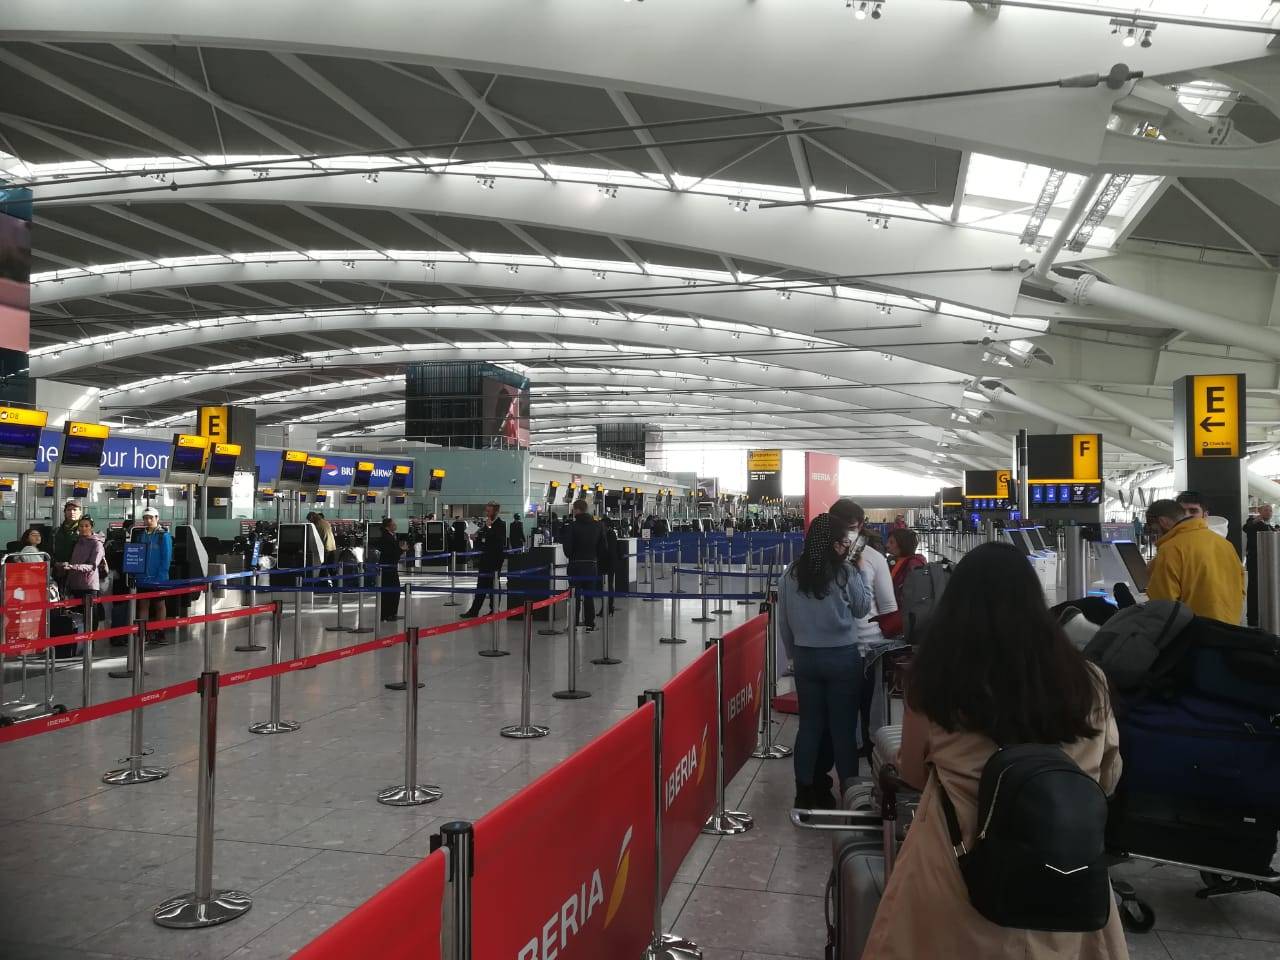 Counter de la aerolínea Iberia en el aeropuerto de Heathrow, Londres. Créditos: Camilo Aguirre